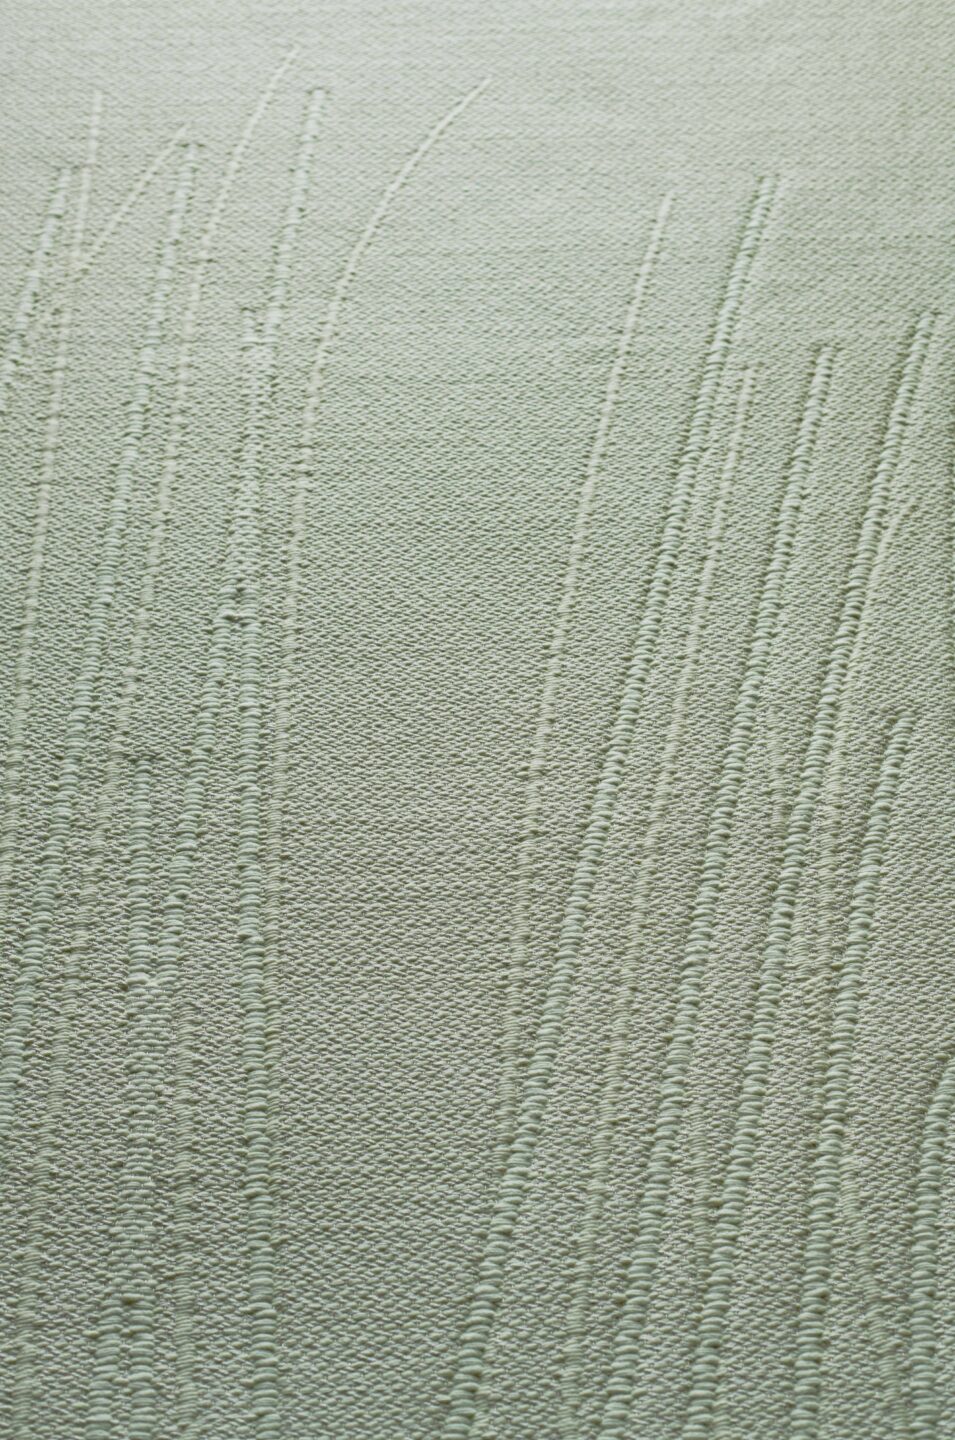 Marsh – Nymphea – Detail 1